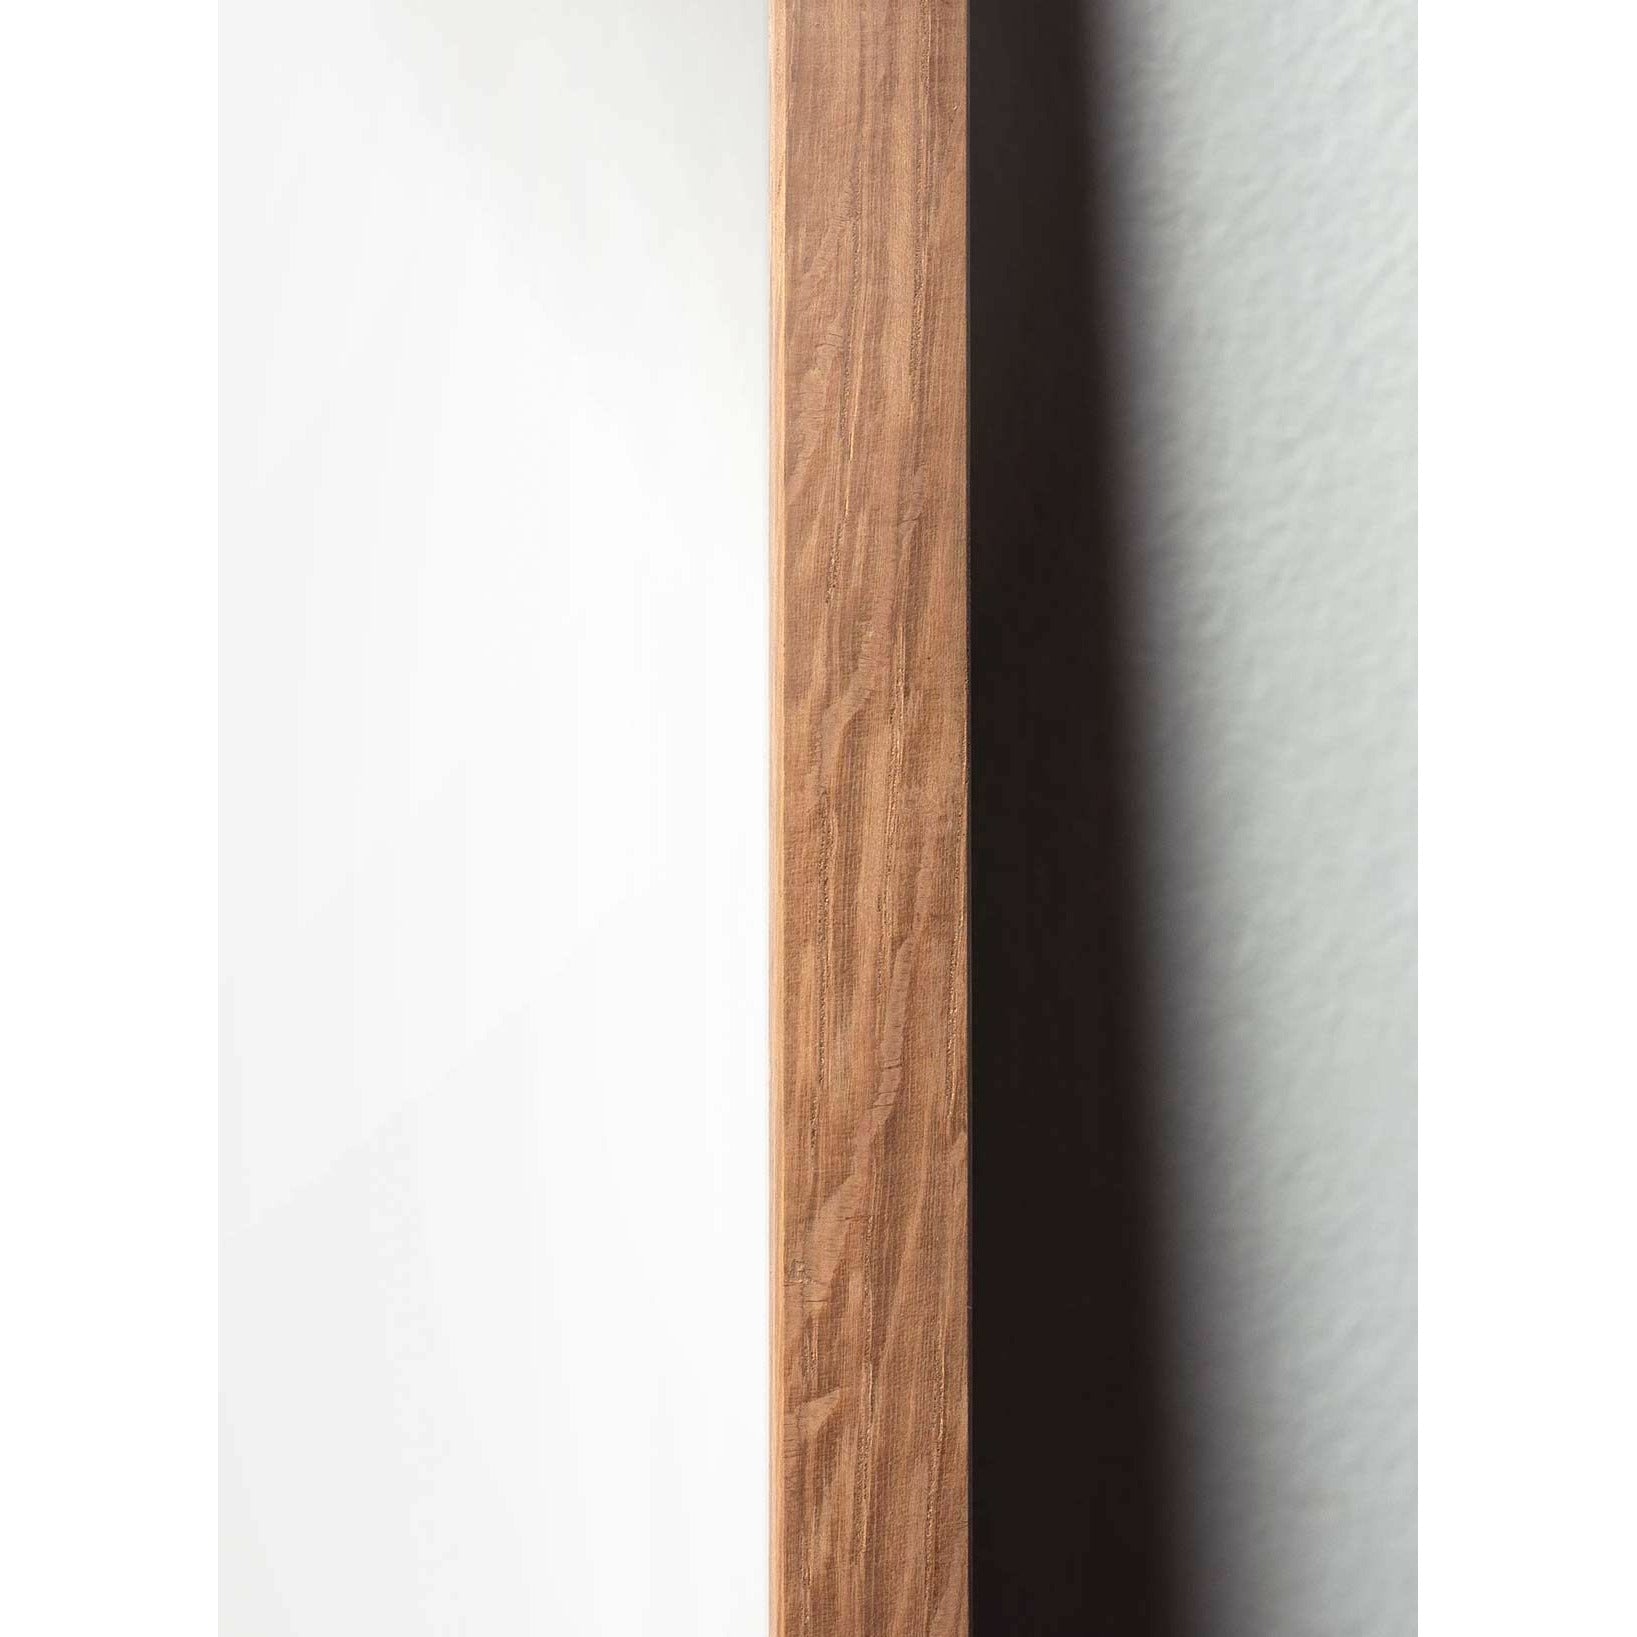 brainchild Pine Cone -klassinen juliste, kehys, joka on valmistettu kevyestä puusta 50x70 cm, hiekanvärinen tausta